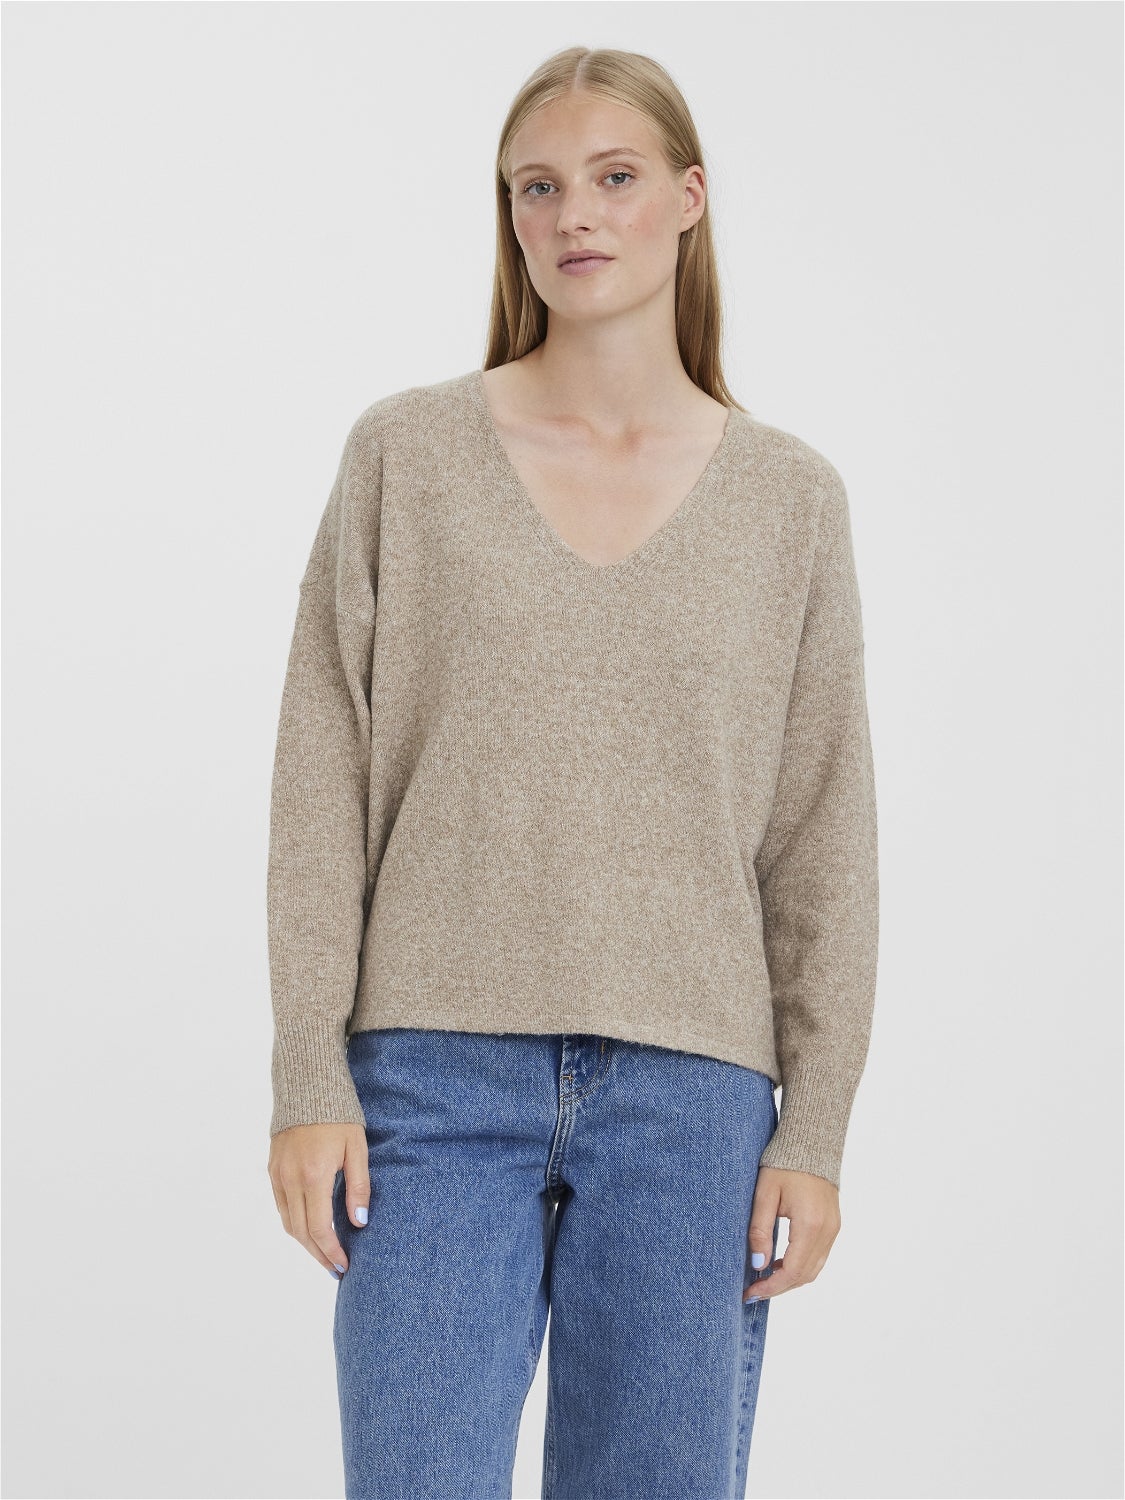 Moda Swetry Swetry z okrągłym dekoltem Vero Moda Sweter z okr\u0105g\u0142ym dekoltem jasnoszary W stylu casual 